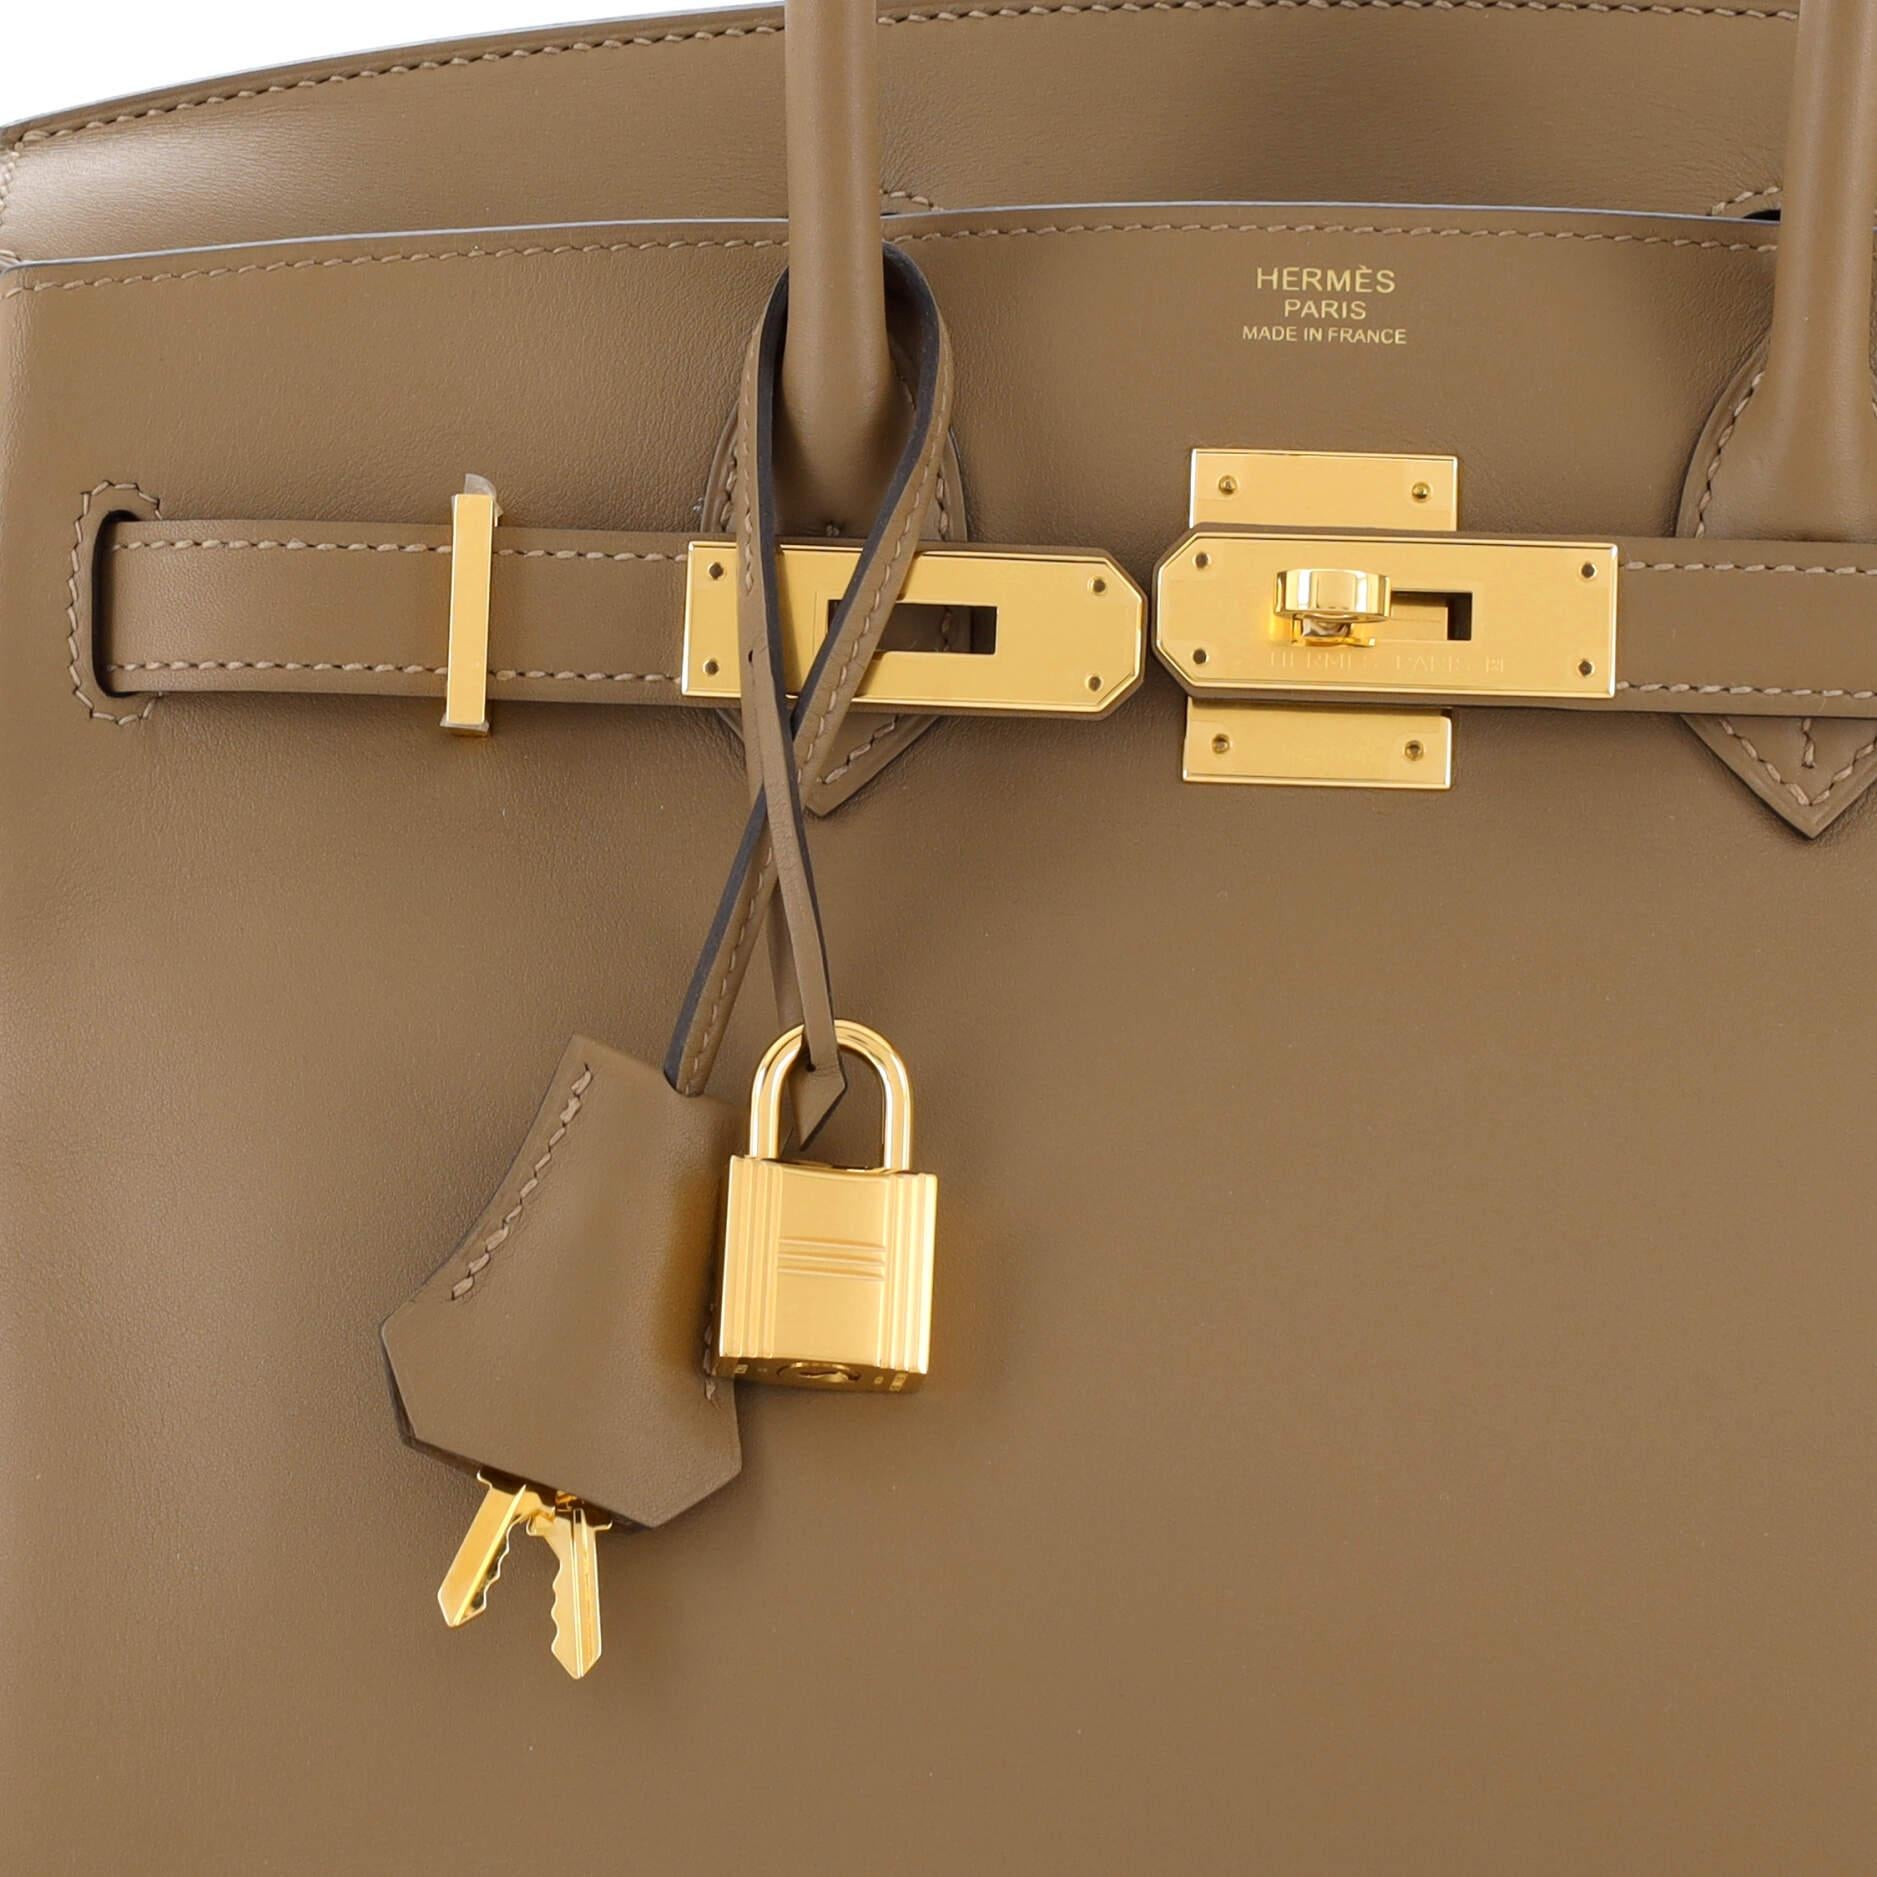 Hermes Birkin Handbag Beige De Weimar Jonathan with Gold Hardware 30 For Sale 3